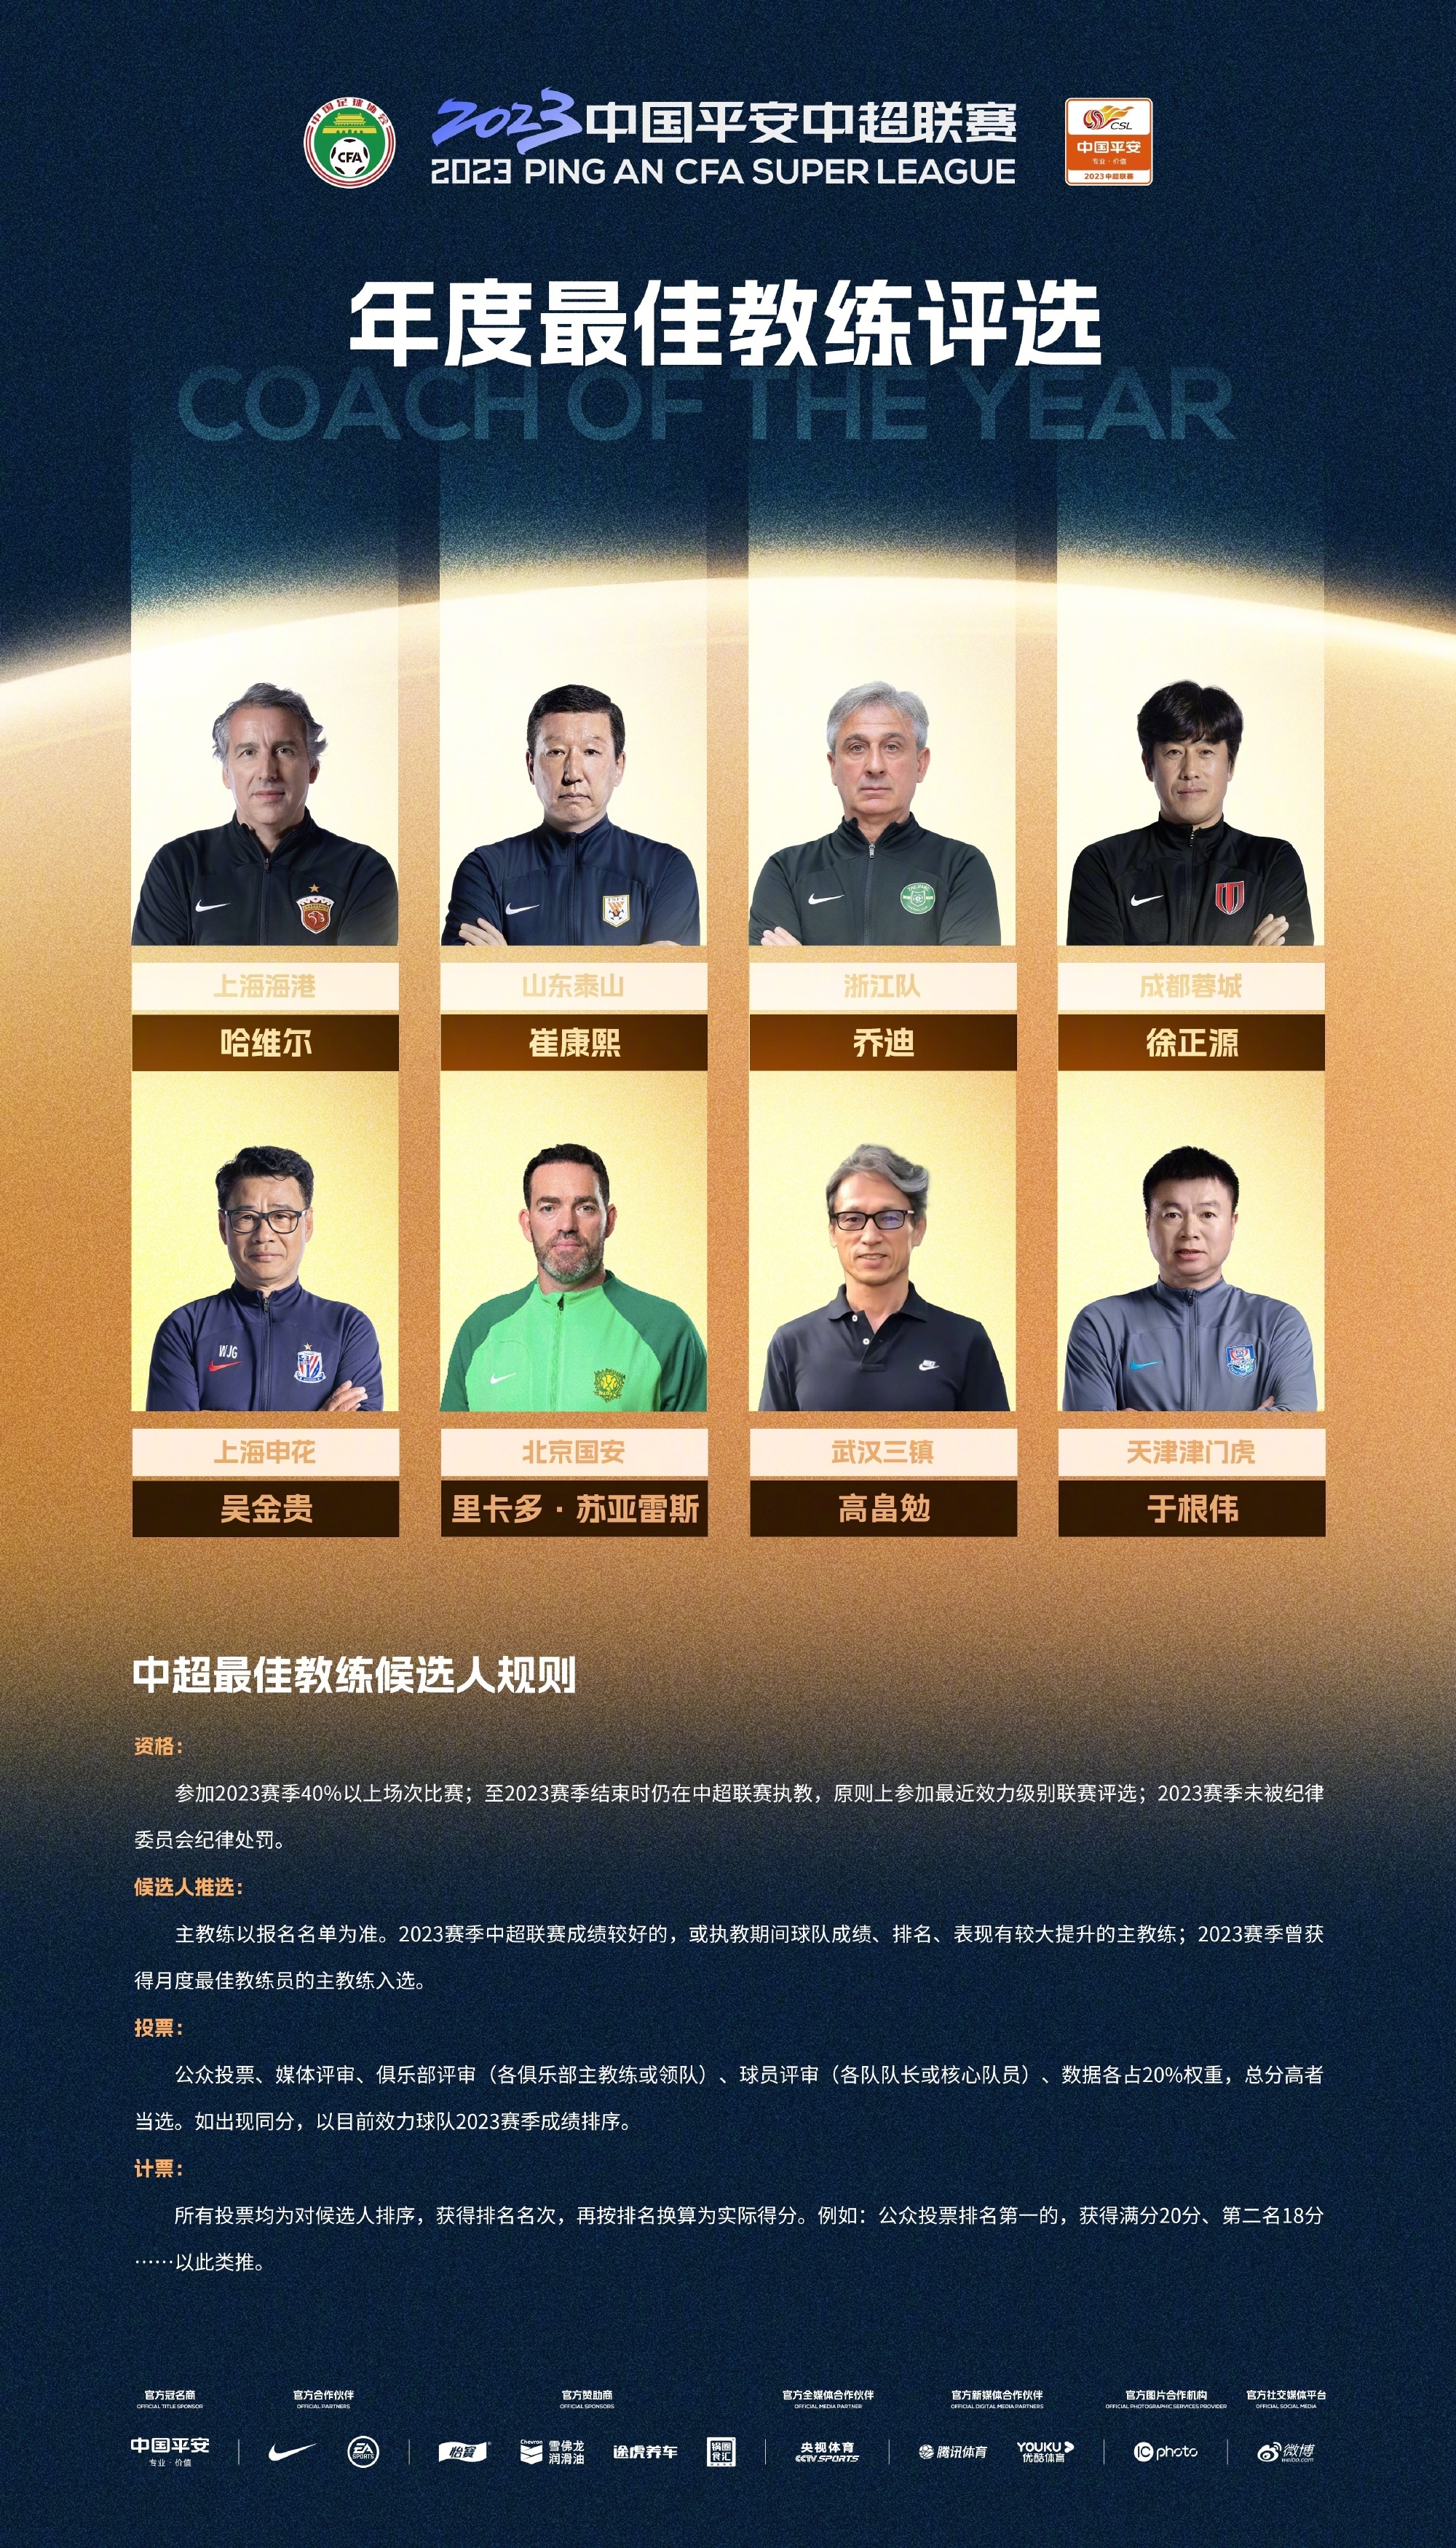 中超年度最佳教练8人候选:崔康熙、哈维尔、徐正源、吴金贵等在列